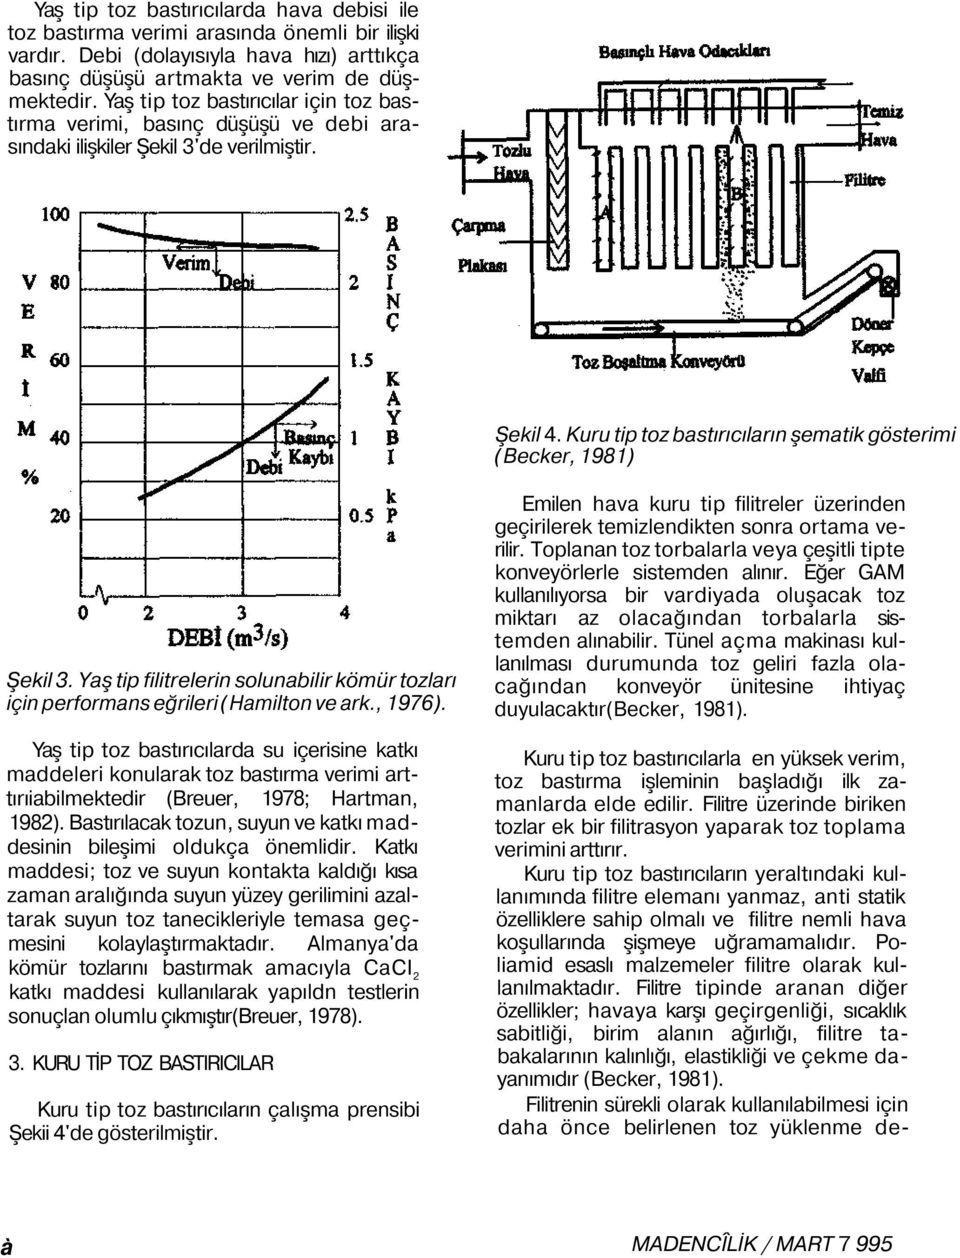 Yaş tip filitrelerin solunabilir kömür tozları için performans eğrileri (Hamilton ve ark., 1976).